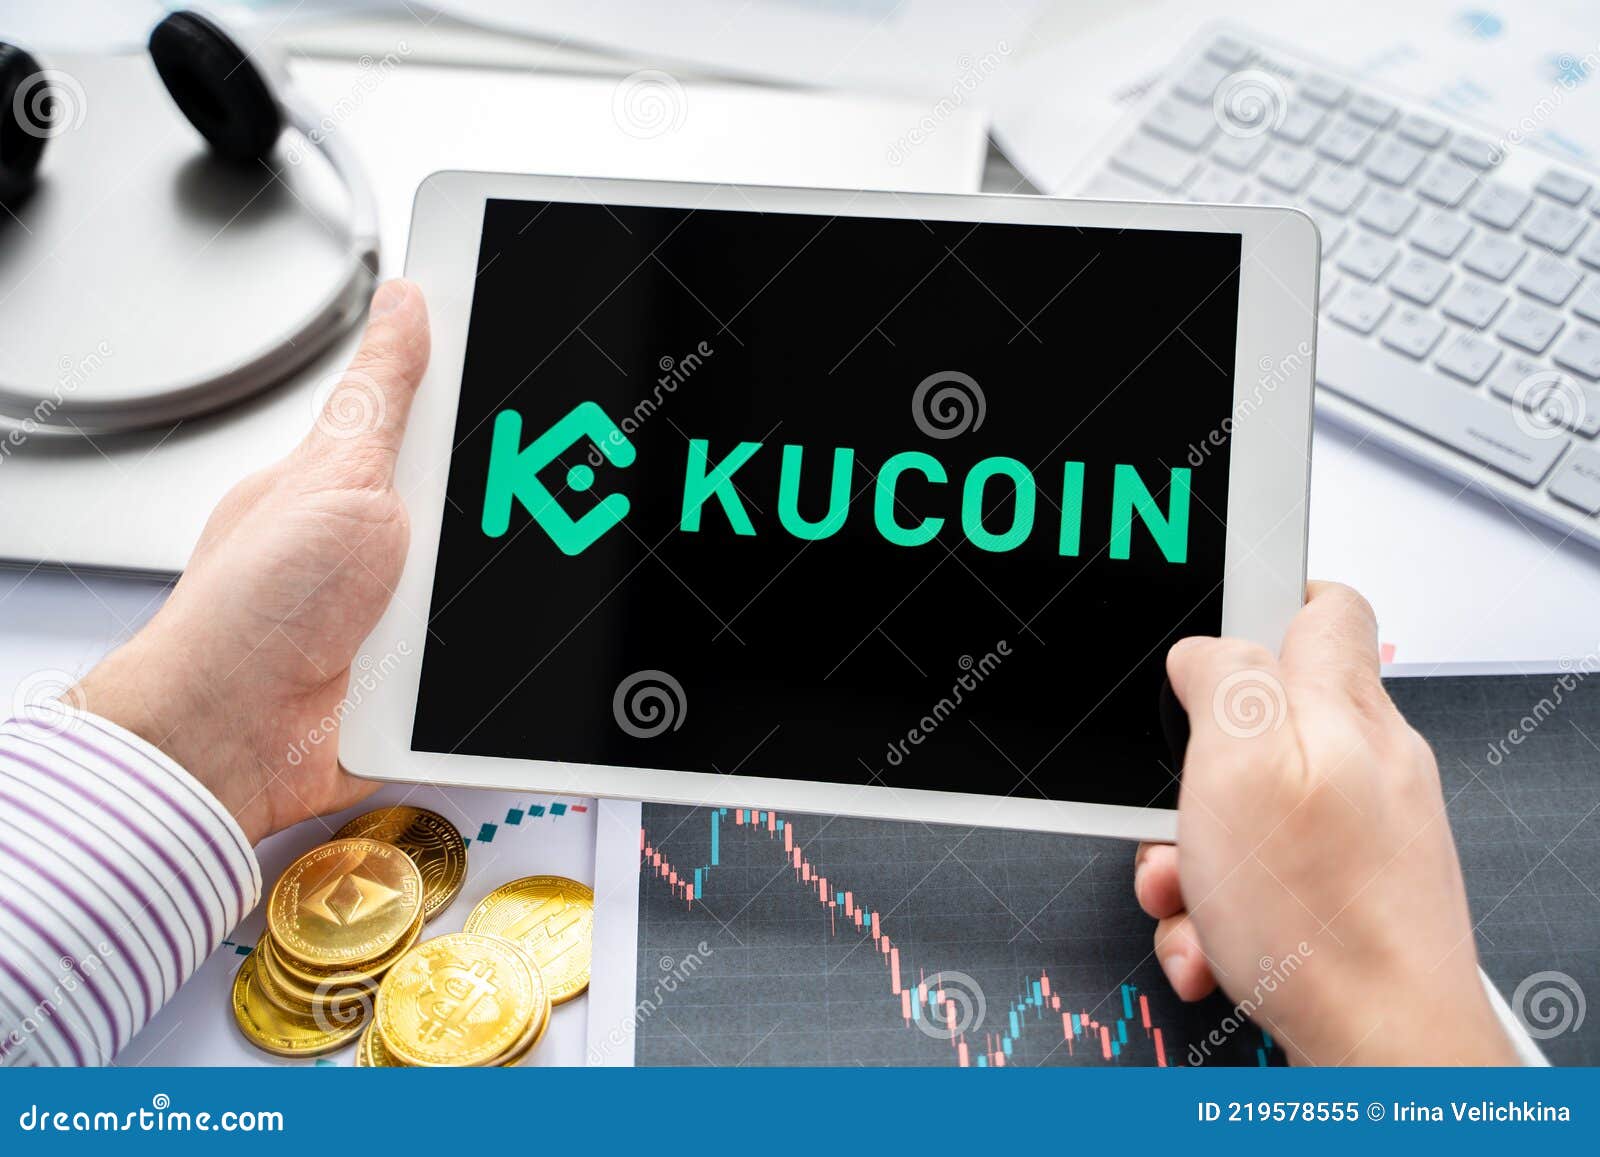 ‎KuCoin- Buy Bitcoin & Crypto on the App Store